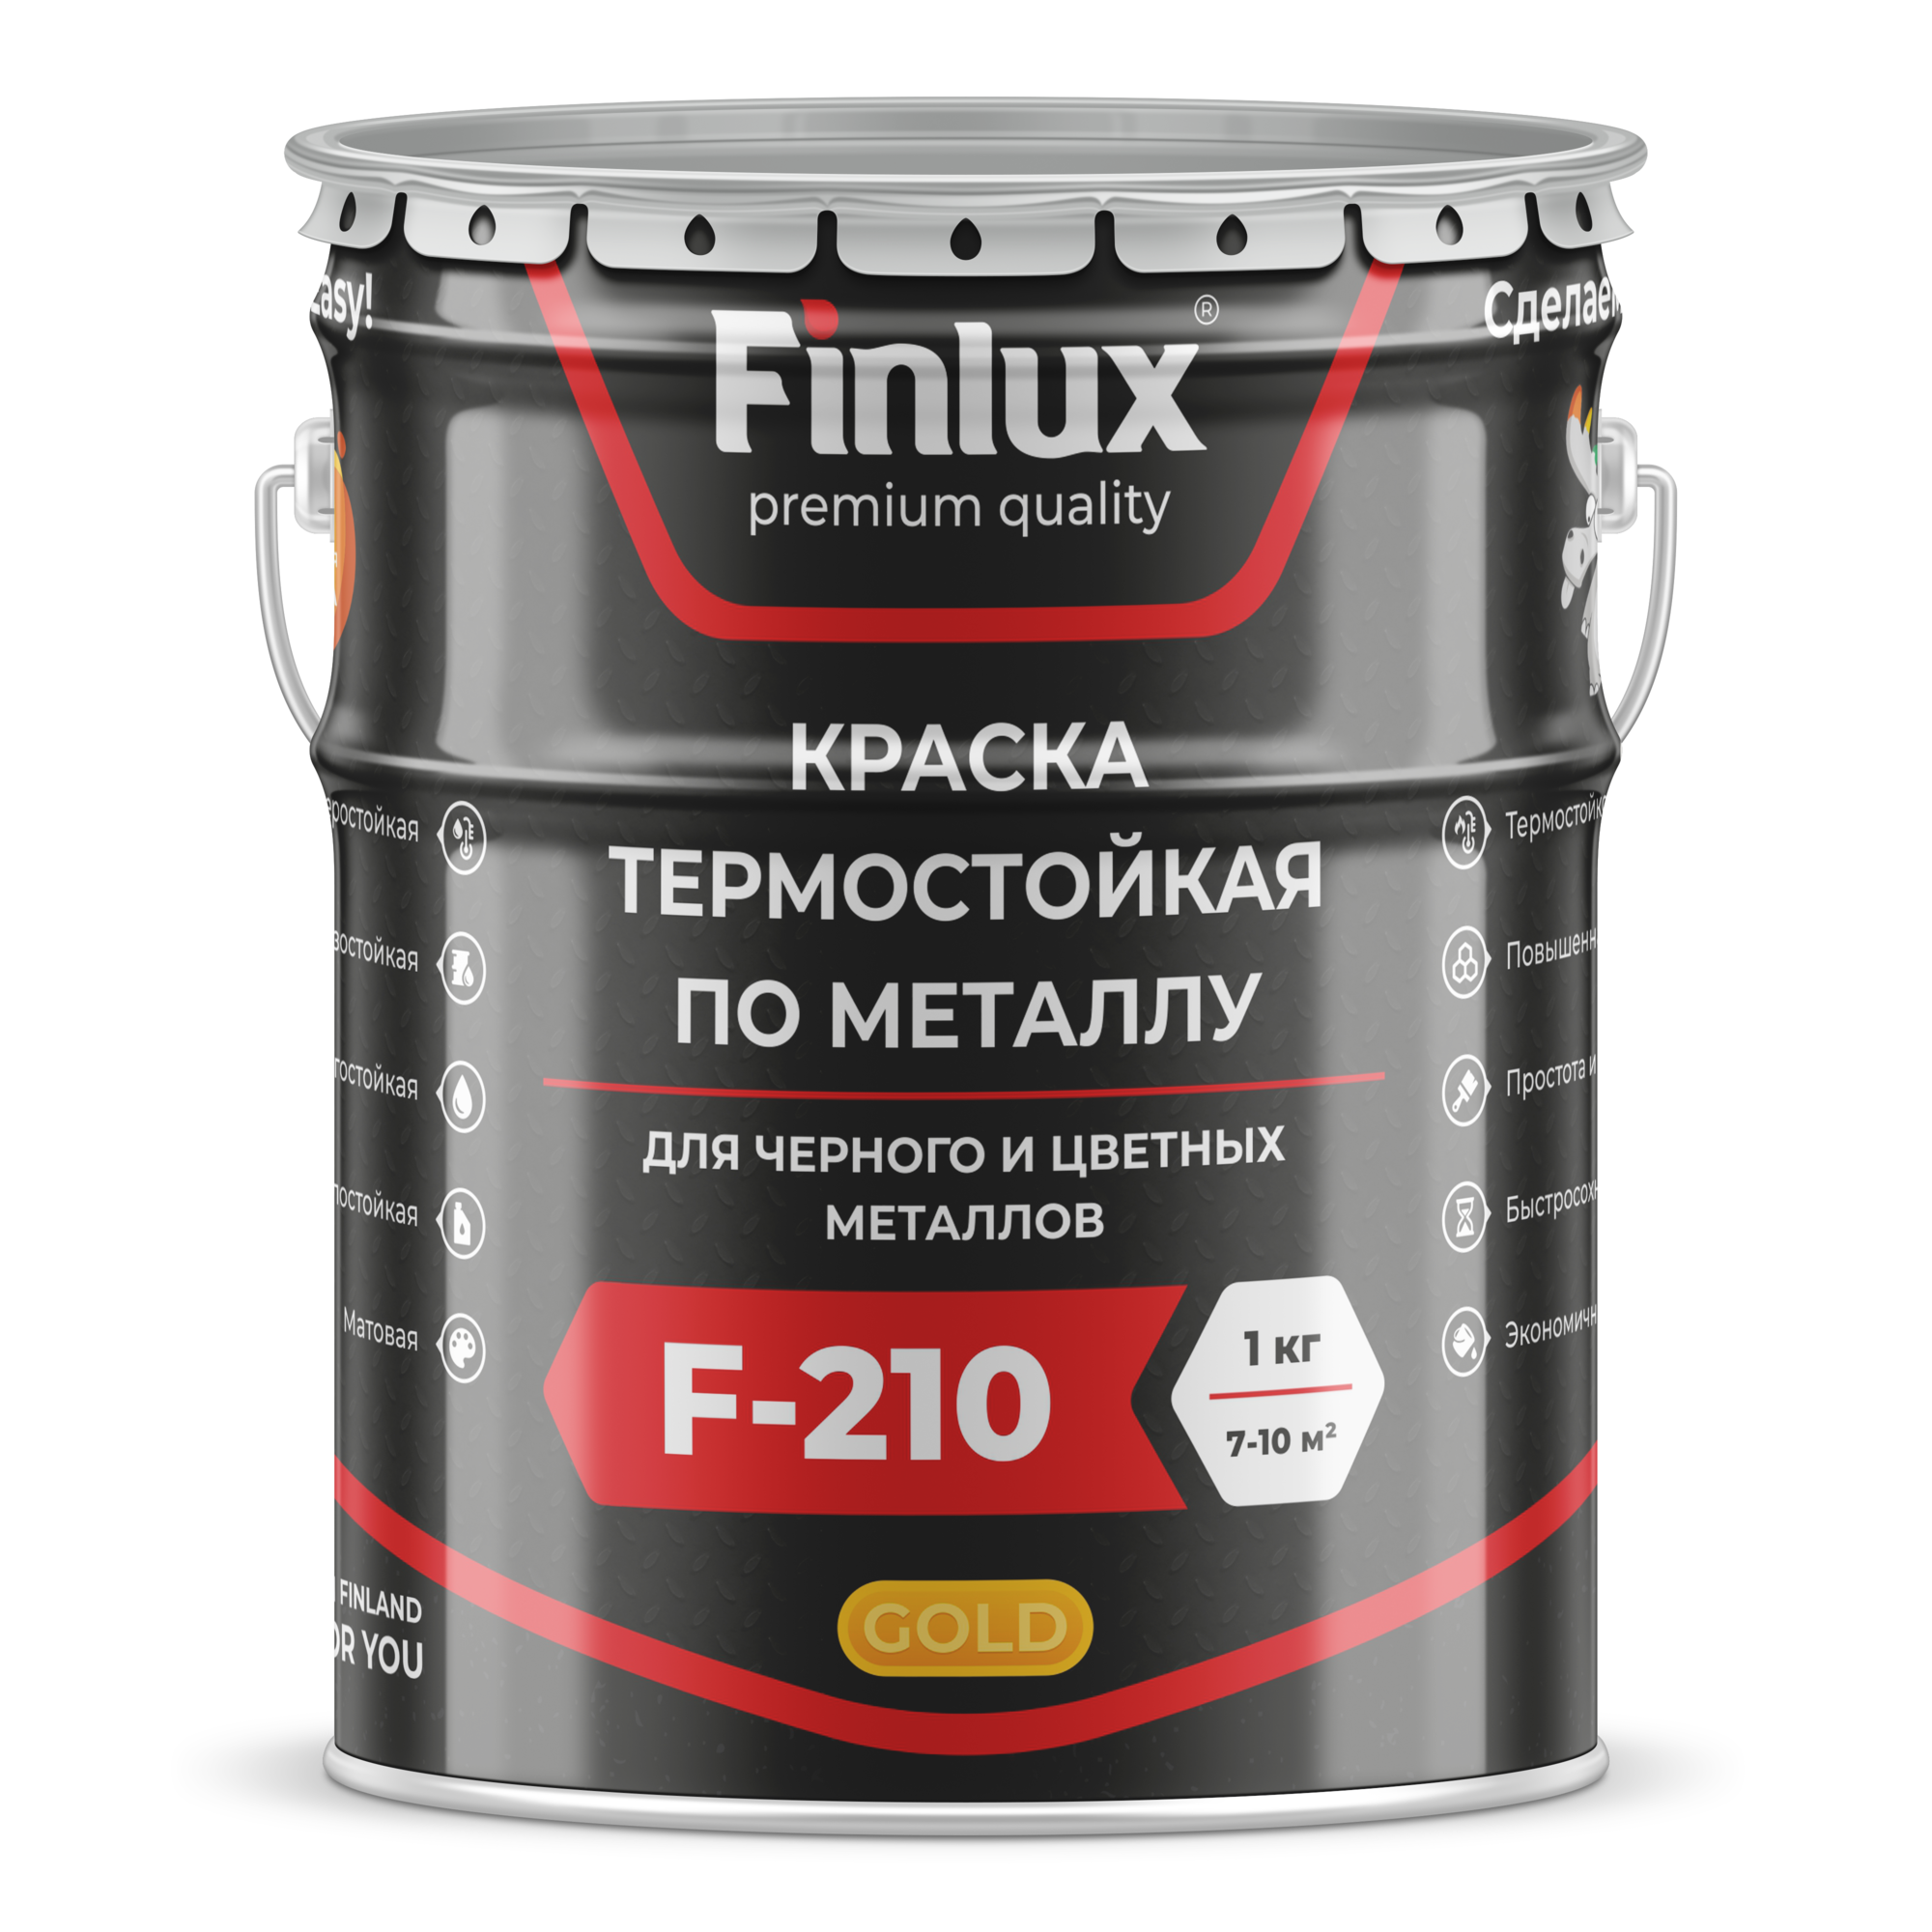 Краска термостойкая для металла Finlux ThermoStop F-210 Gold/ Финлюкс ТермоСтоп Ф-210 Голд ral 9005, 20 кг